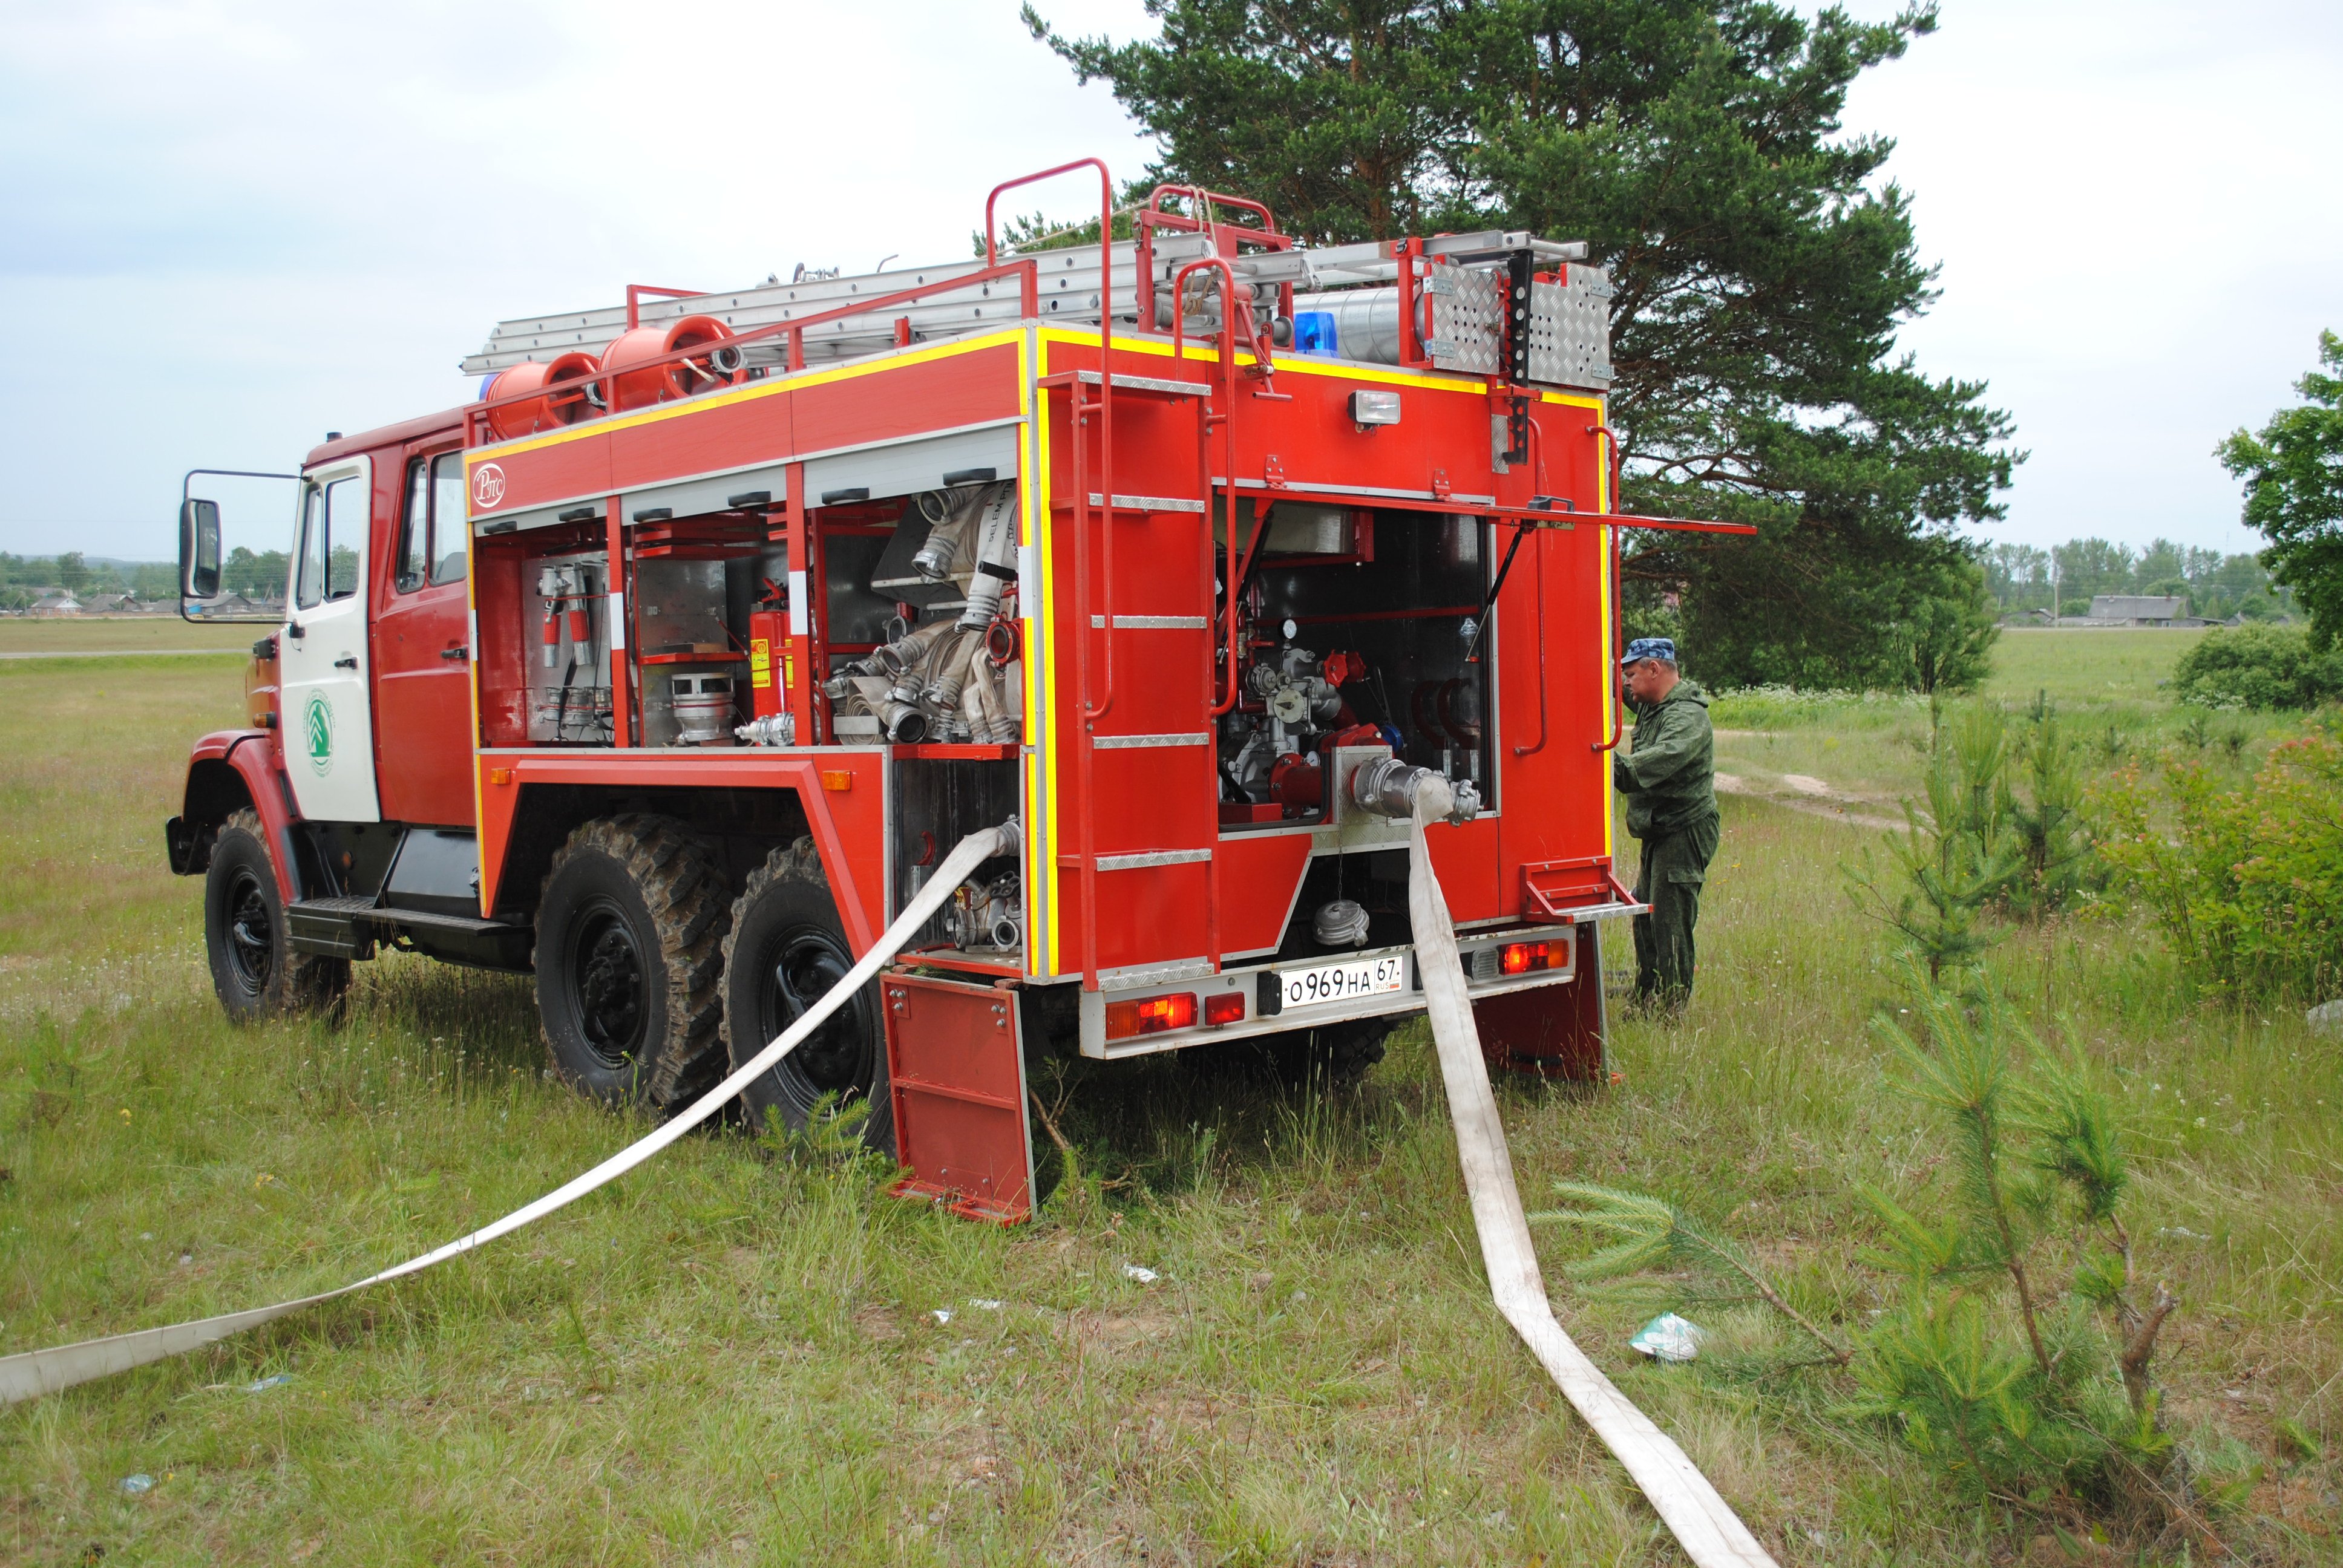 Пожарный автомобиль оборудованный. ПТВ пожарного автомобиля АЦ-40. ПНС-110 пожарный автомобиль. Пожарный насосно-рукавный автомобиль. АЦ 3.2 спецтехника пожаротушения.